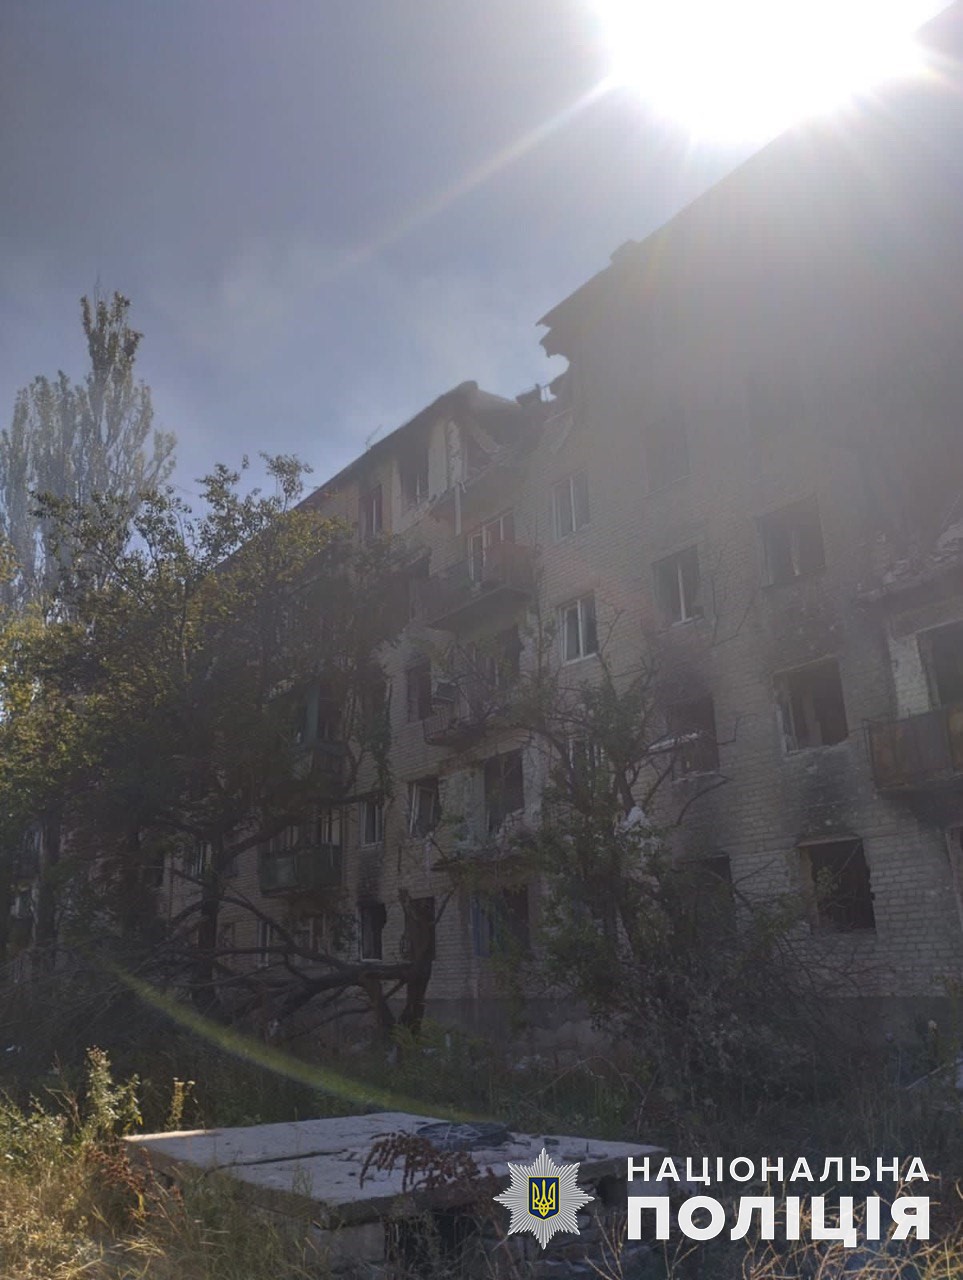 Жилая многоэтажка, разрушенная россиянами 15 августа